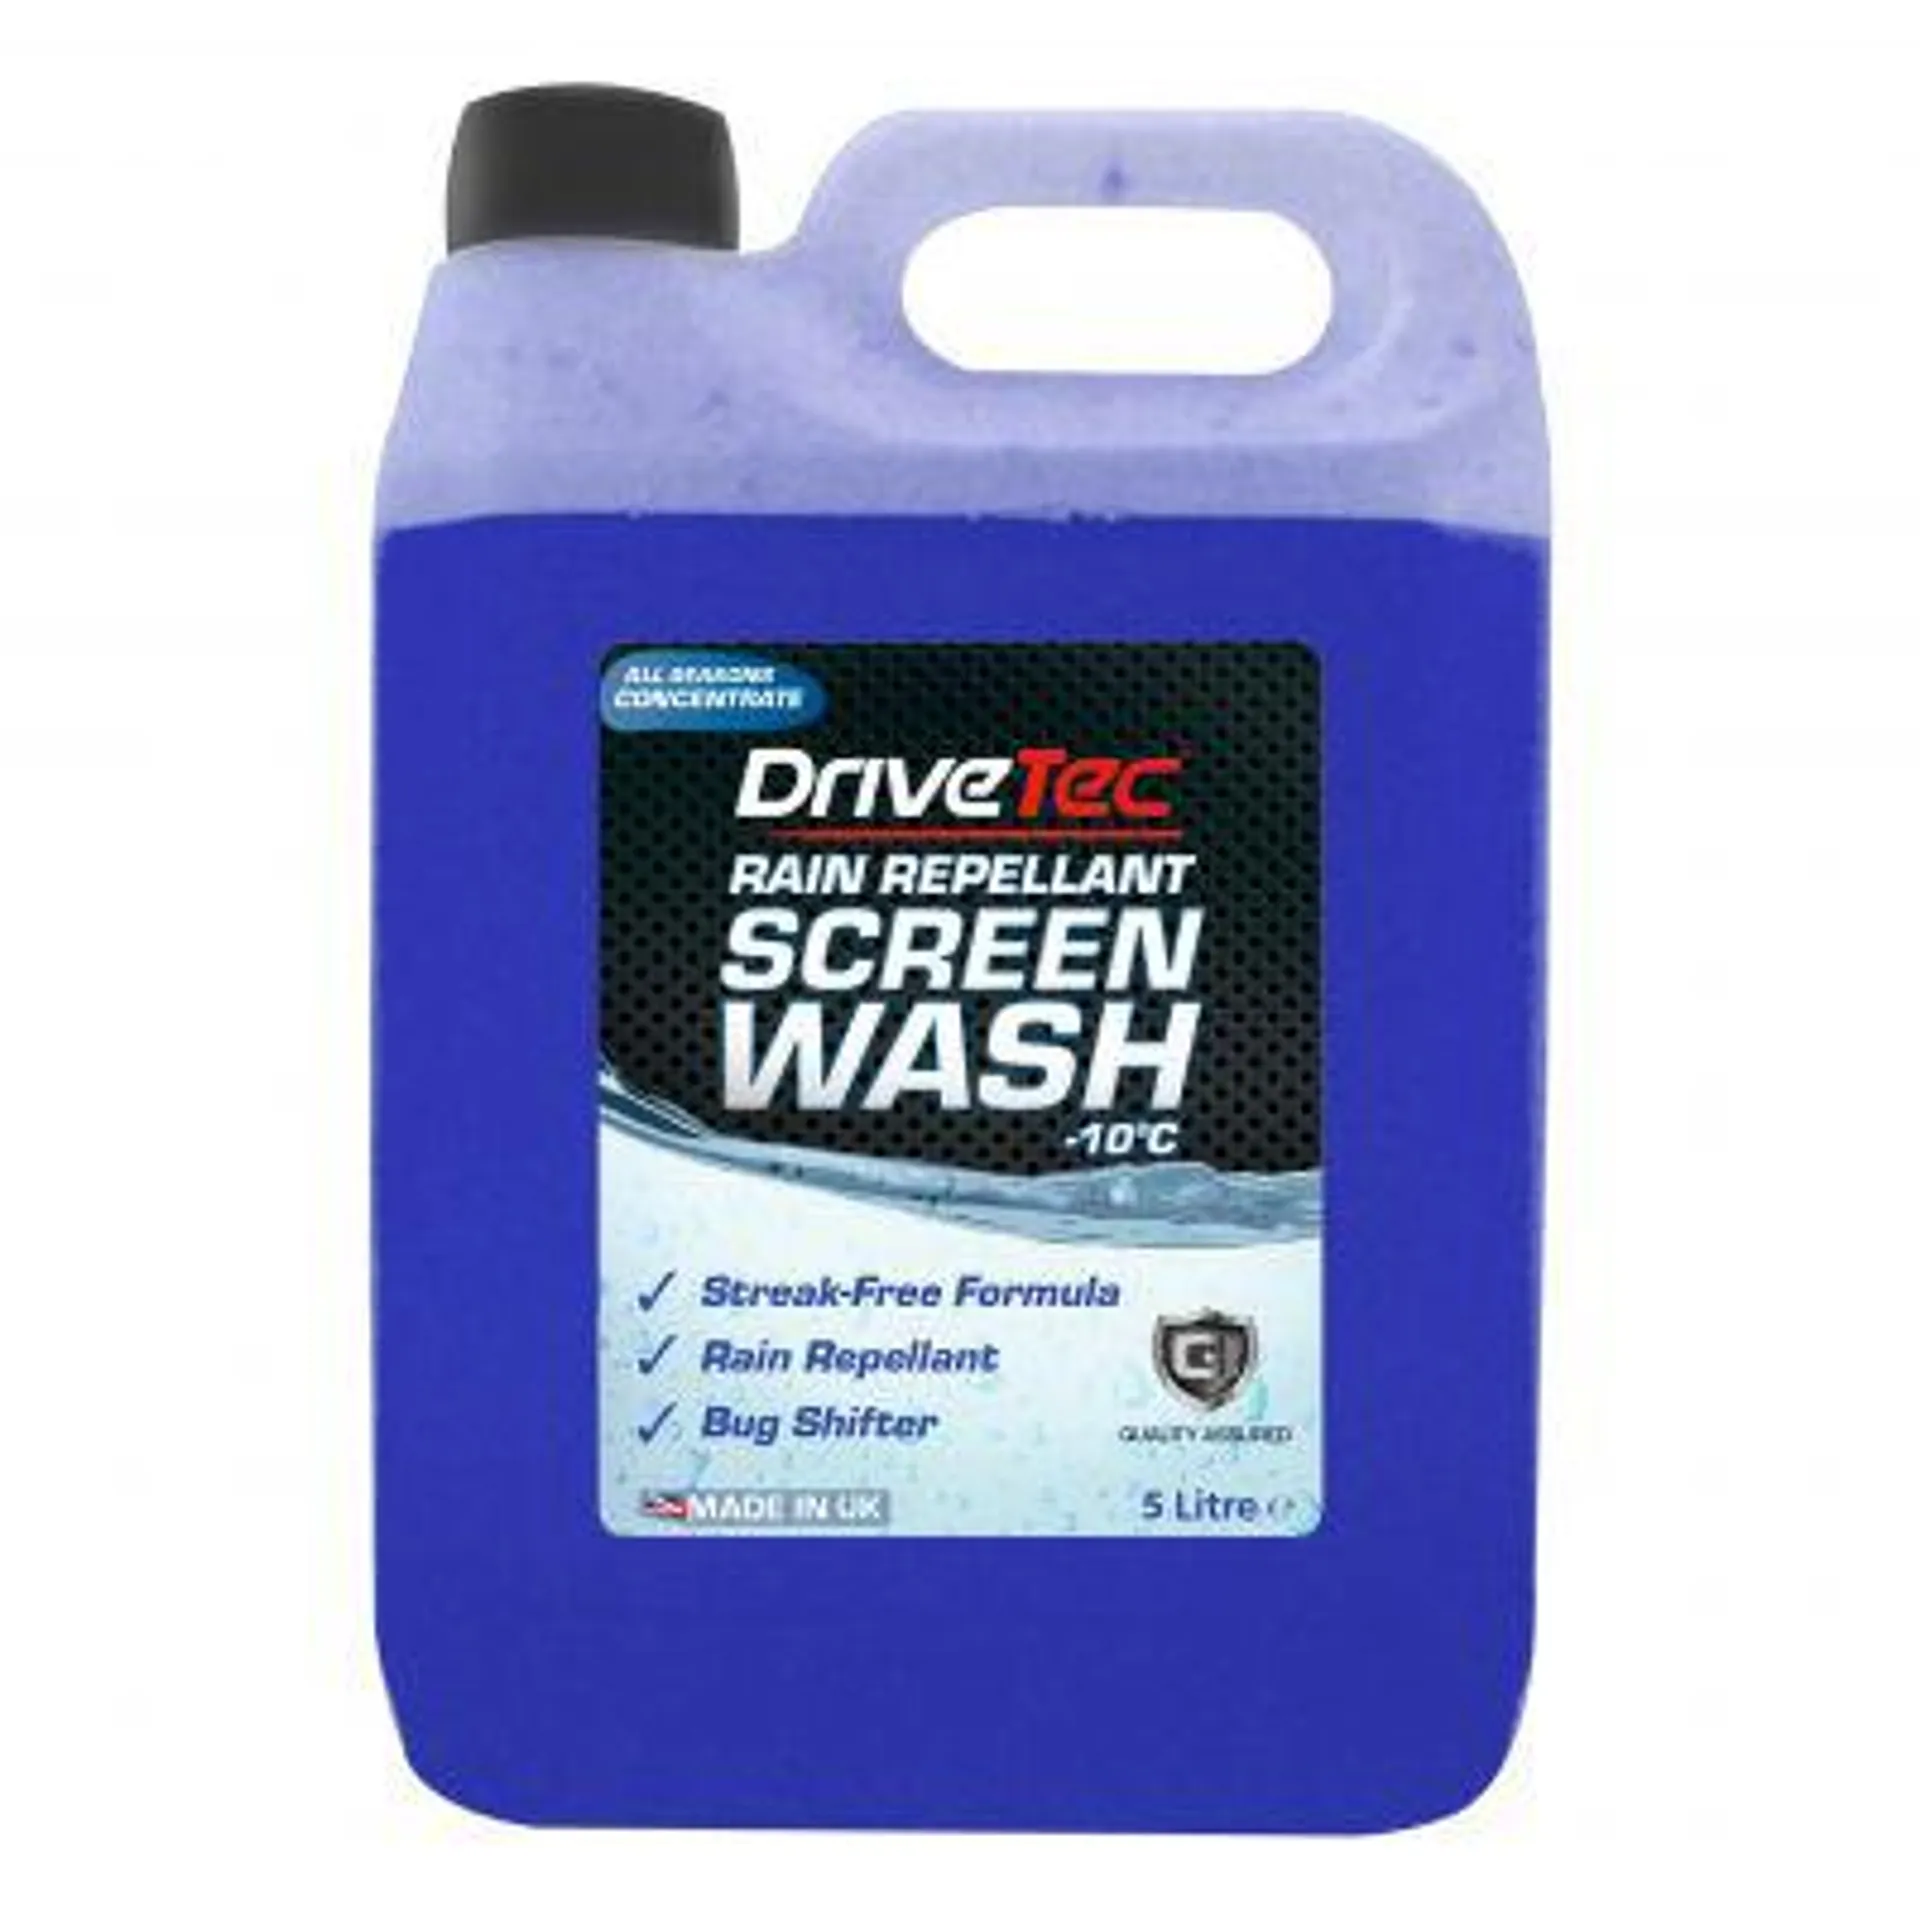 drivetec concentrate screen wash with rain repellent 5l